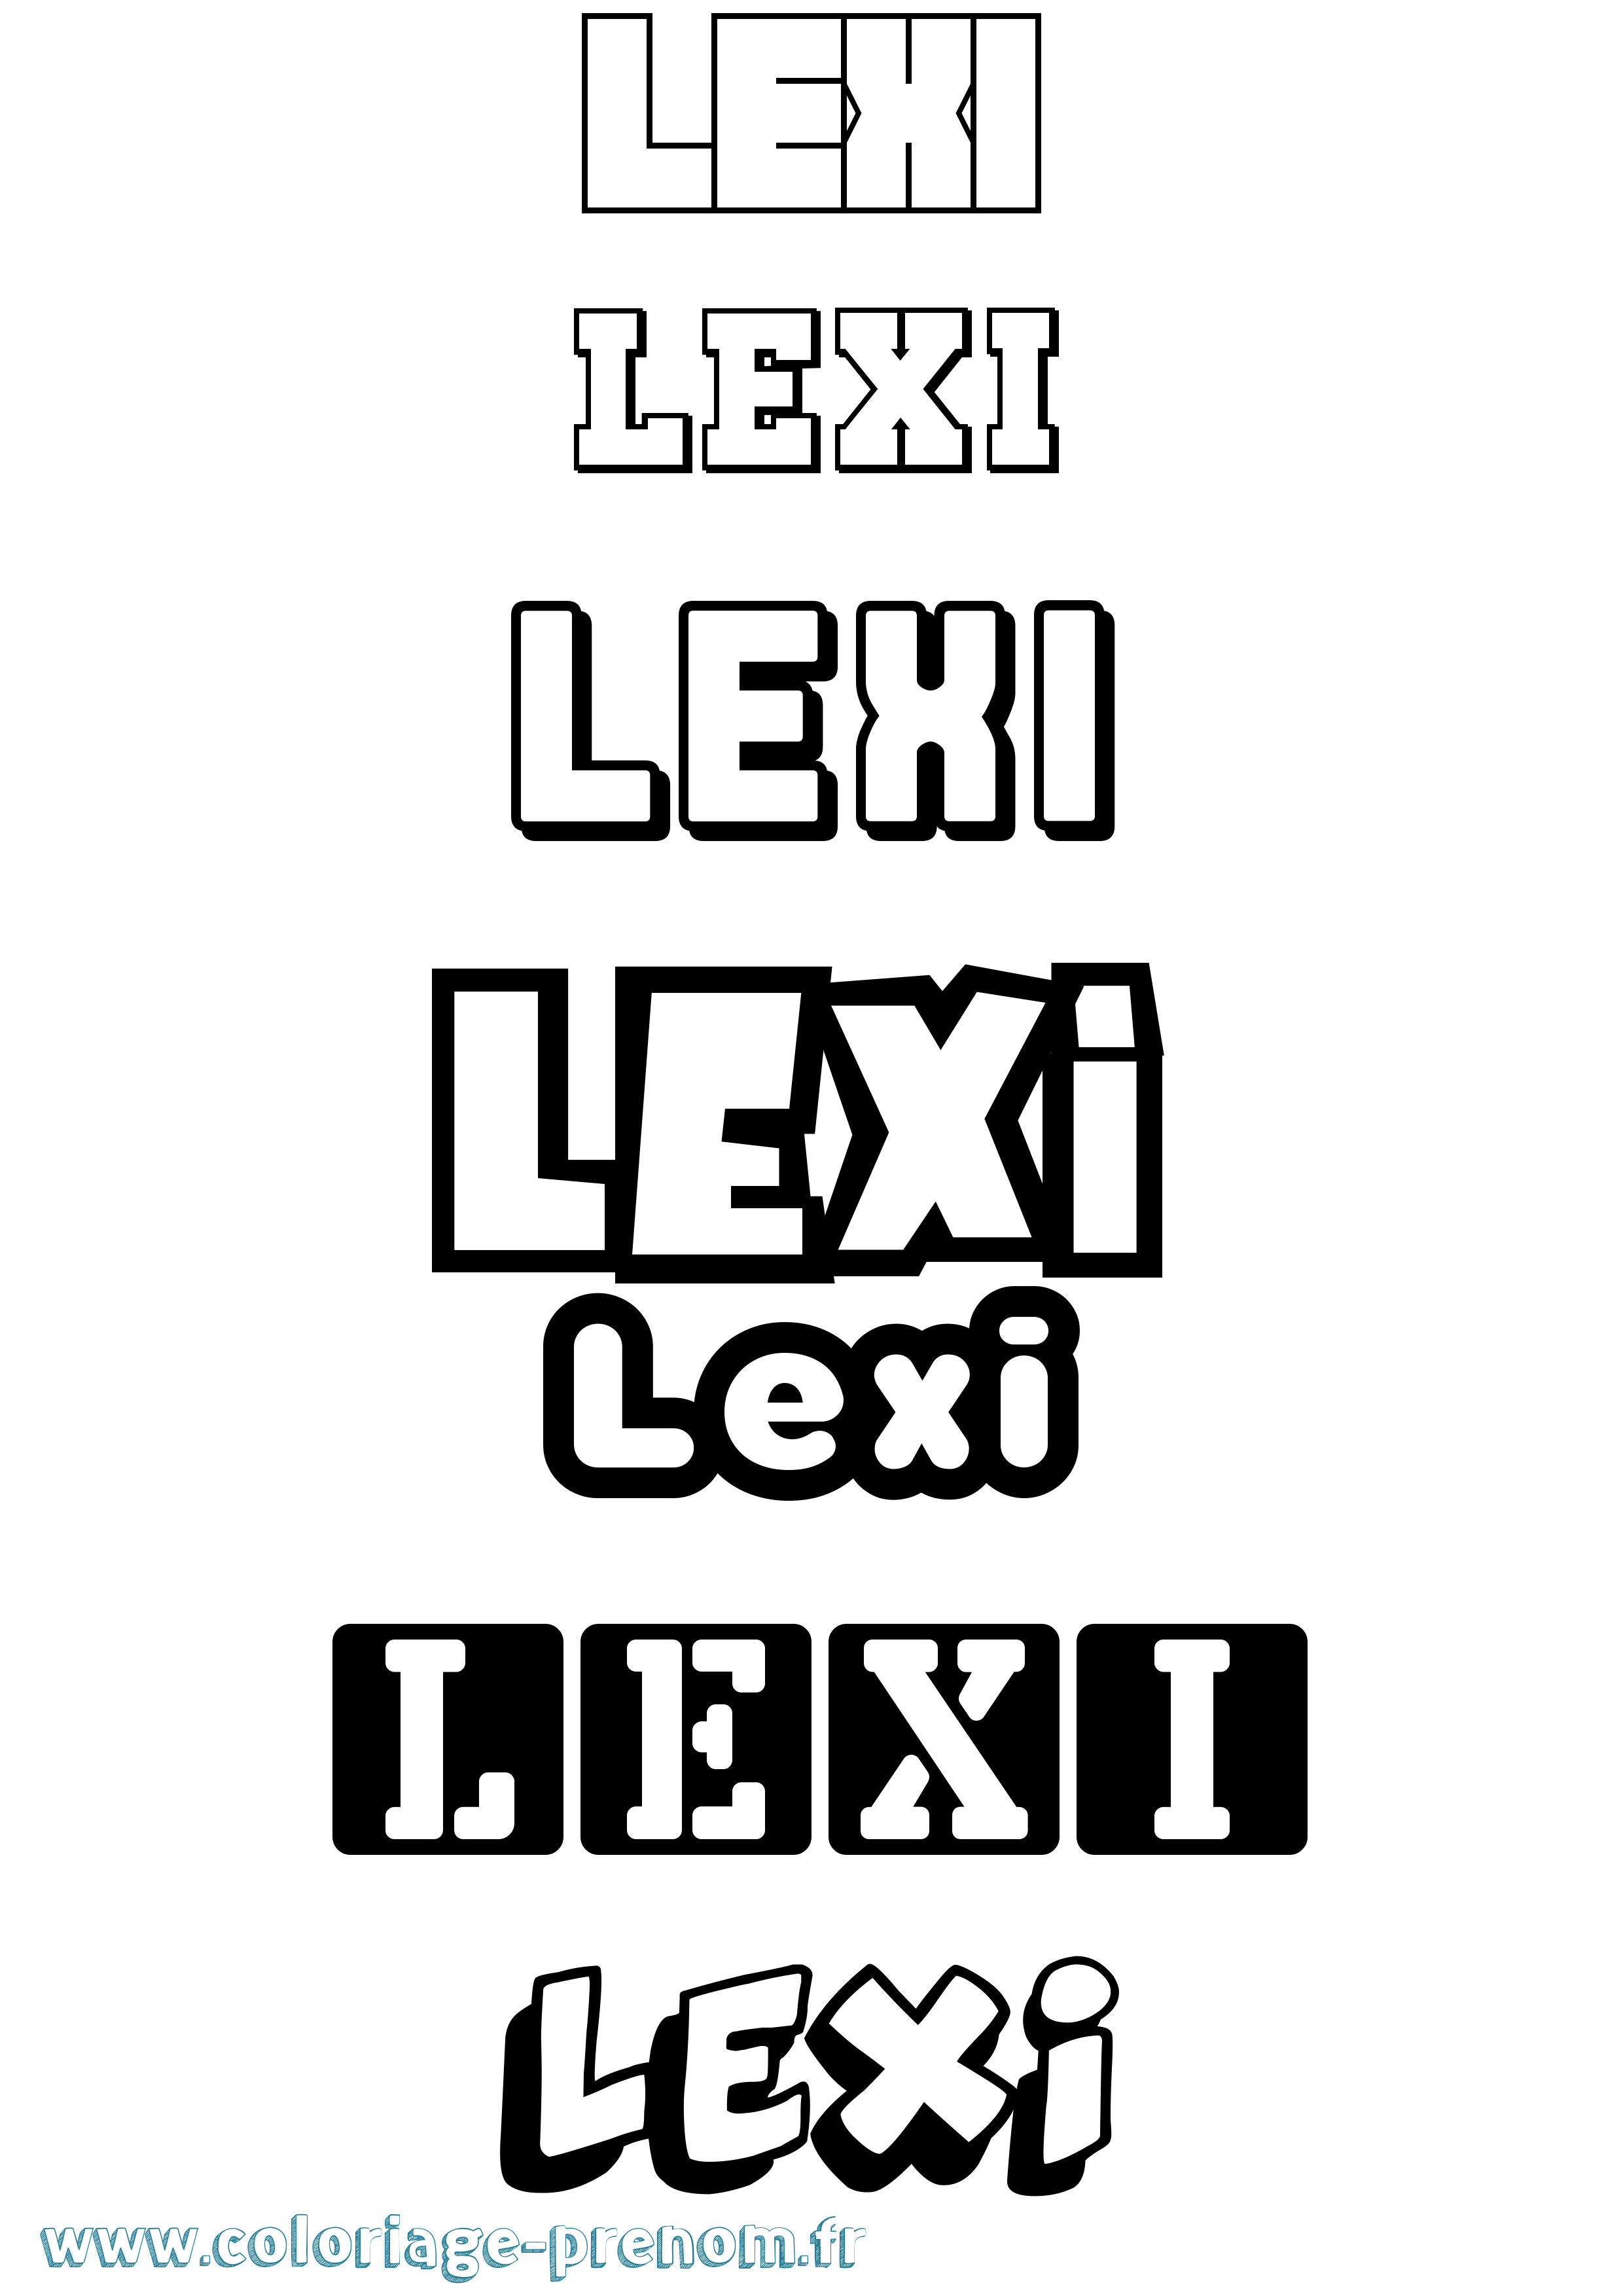 Coloriage prénom Lexi Simple